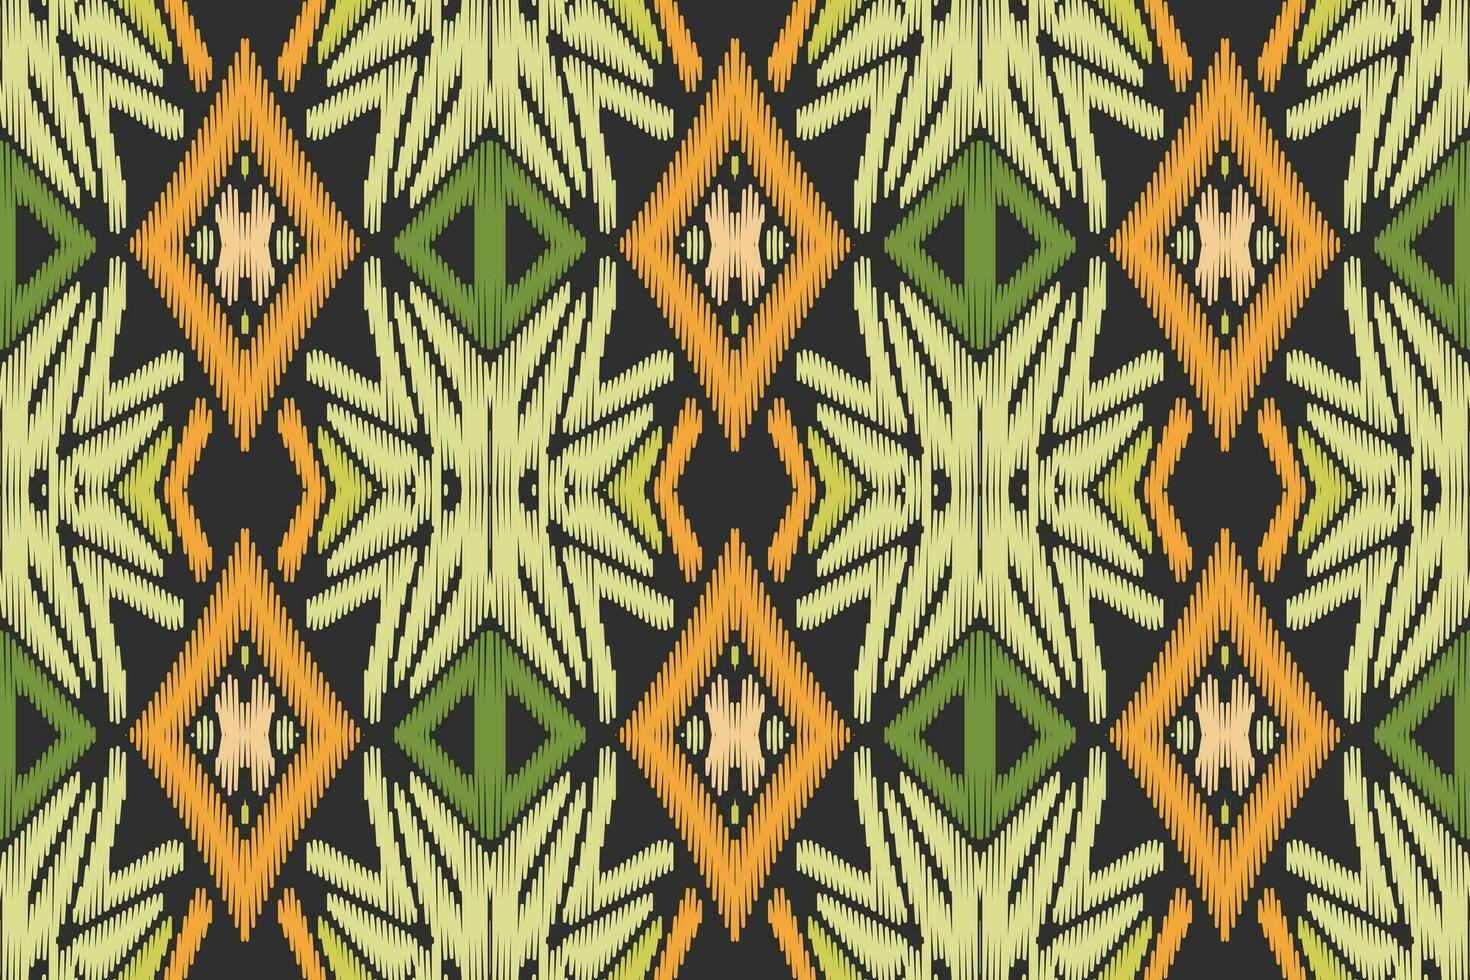 ikat blommig paisley broderi på vit bakgrund.geometrisk etnisk orientalisk mönster traditionell.aztec stil abstrakt vektor illustration.design för textur, tyg, kläder, inslagning, dekoration, sarong.